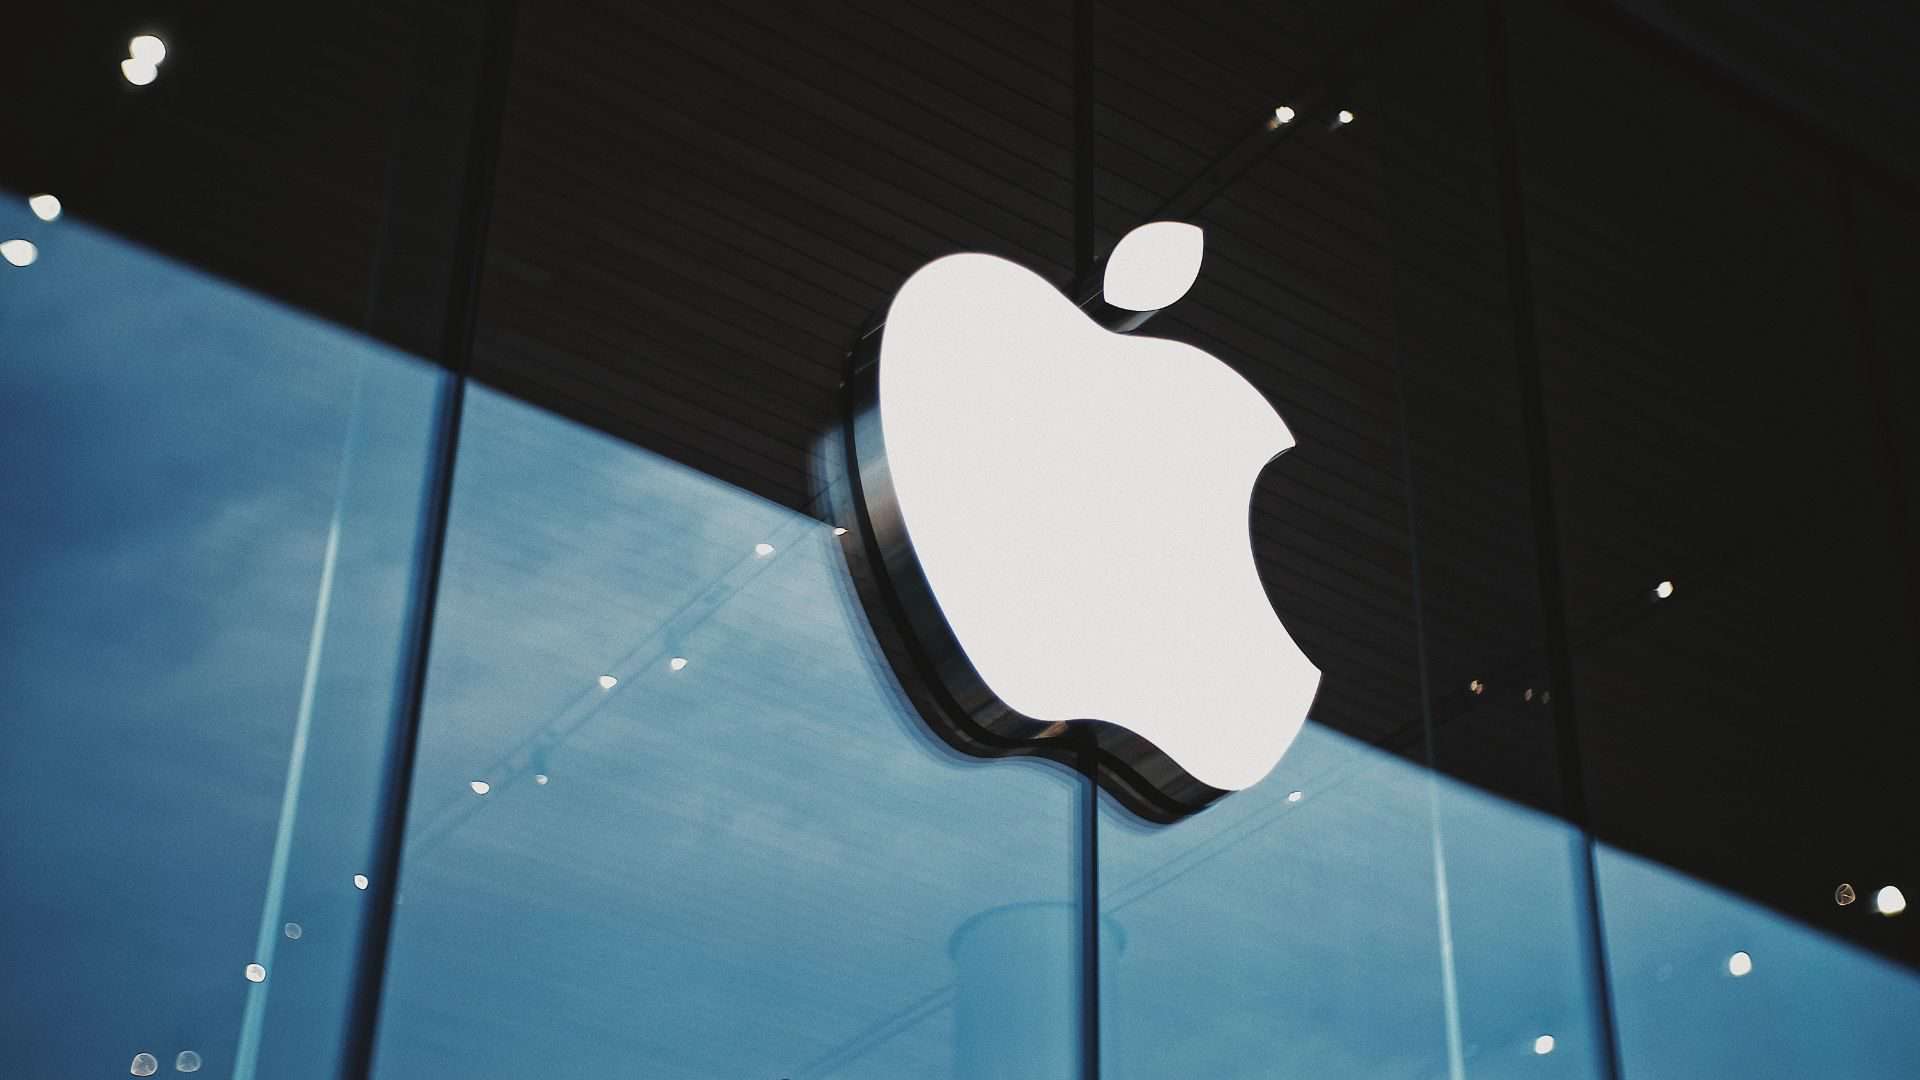 image showing the apple logo - for header image of apple affiliate program post on bloggingtips.com